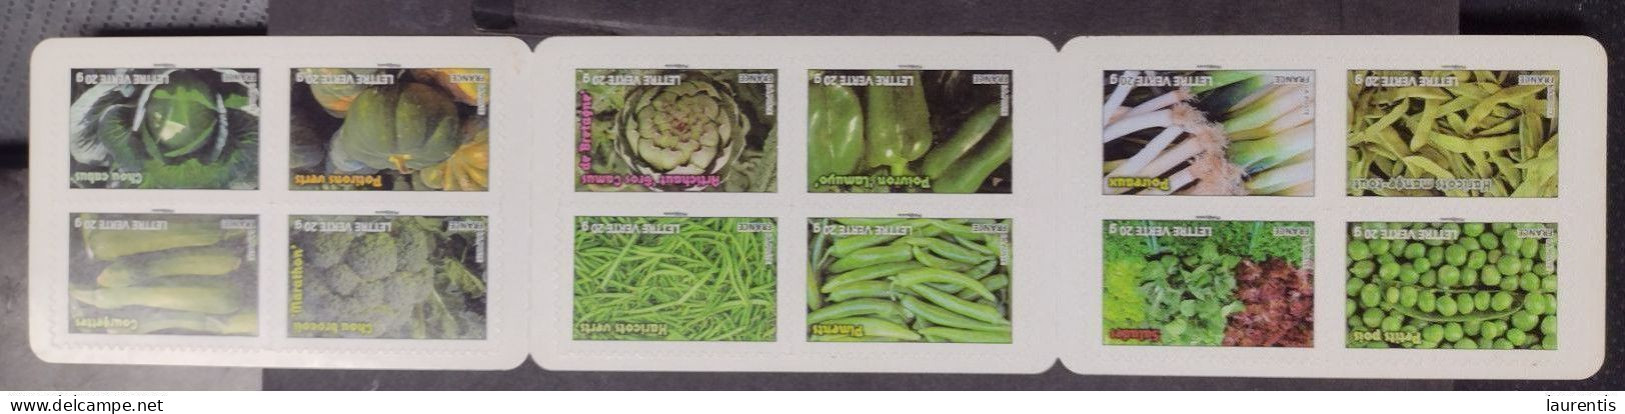 D7028  Vegetables - Foods - France MNH - Face Value 13€92 - 1€16 Each - 12,75 - Gemüse